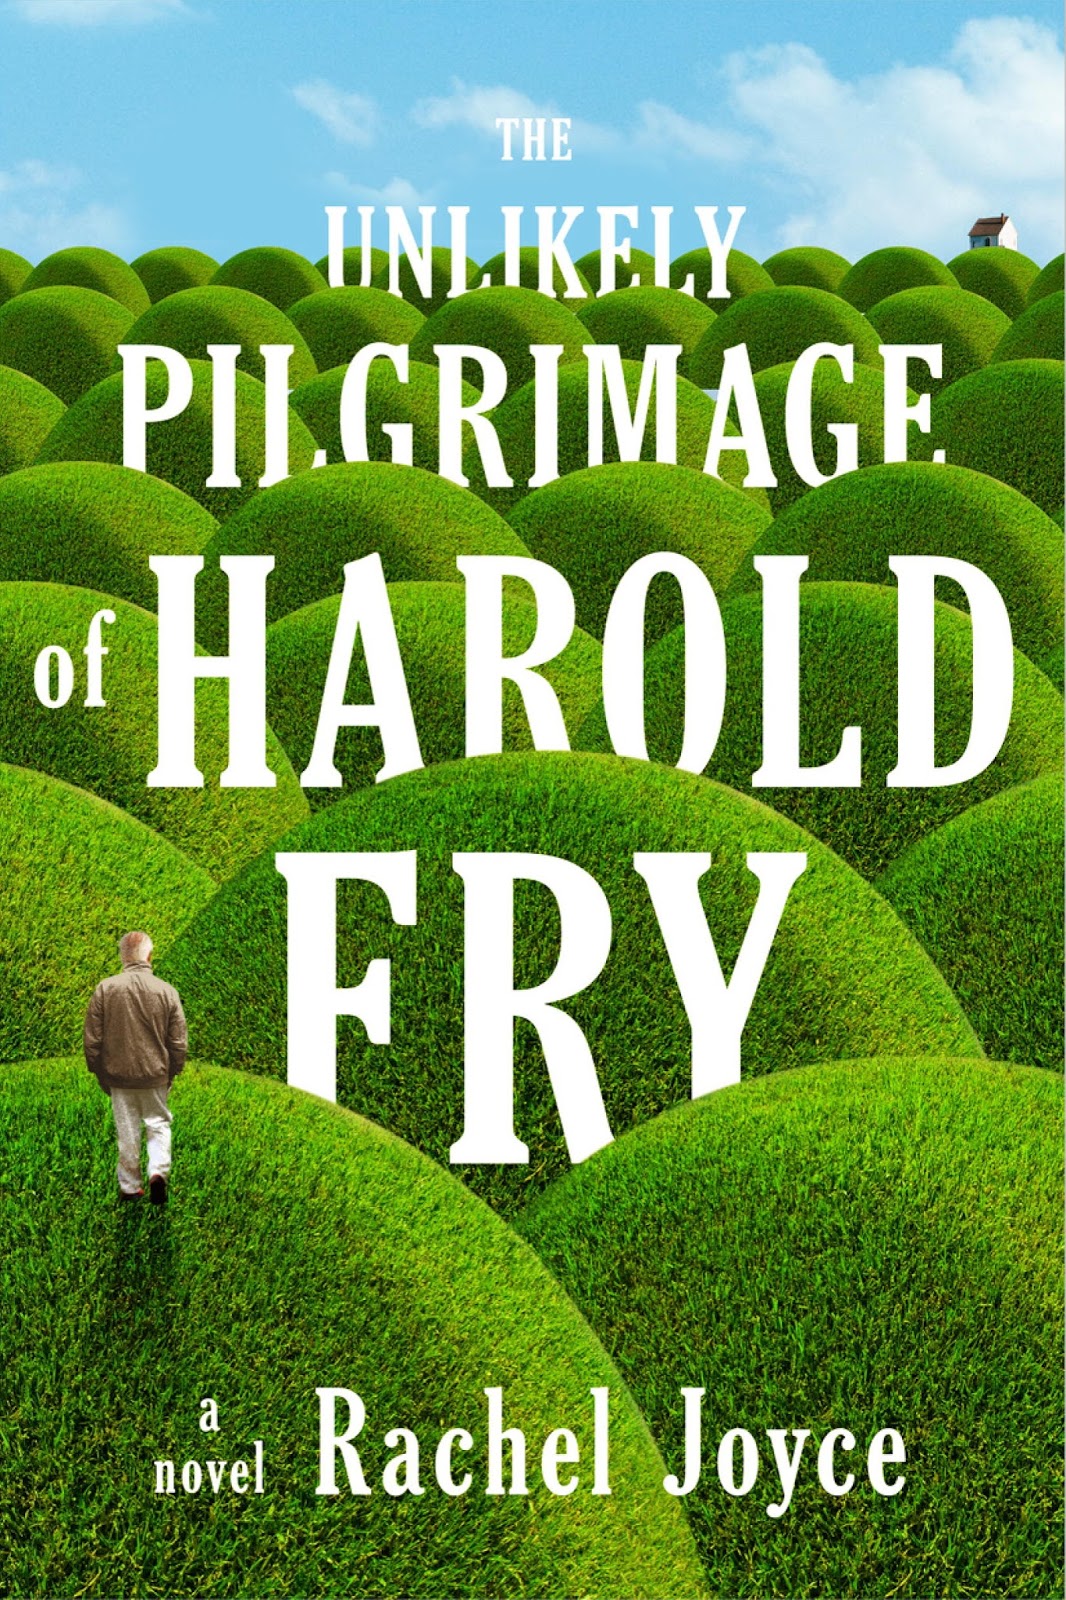 Rachel Joyce: The unlikely pilgrimage of Harold Fry (Paperback, 2012, Random House)